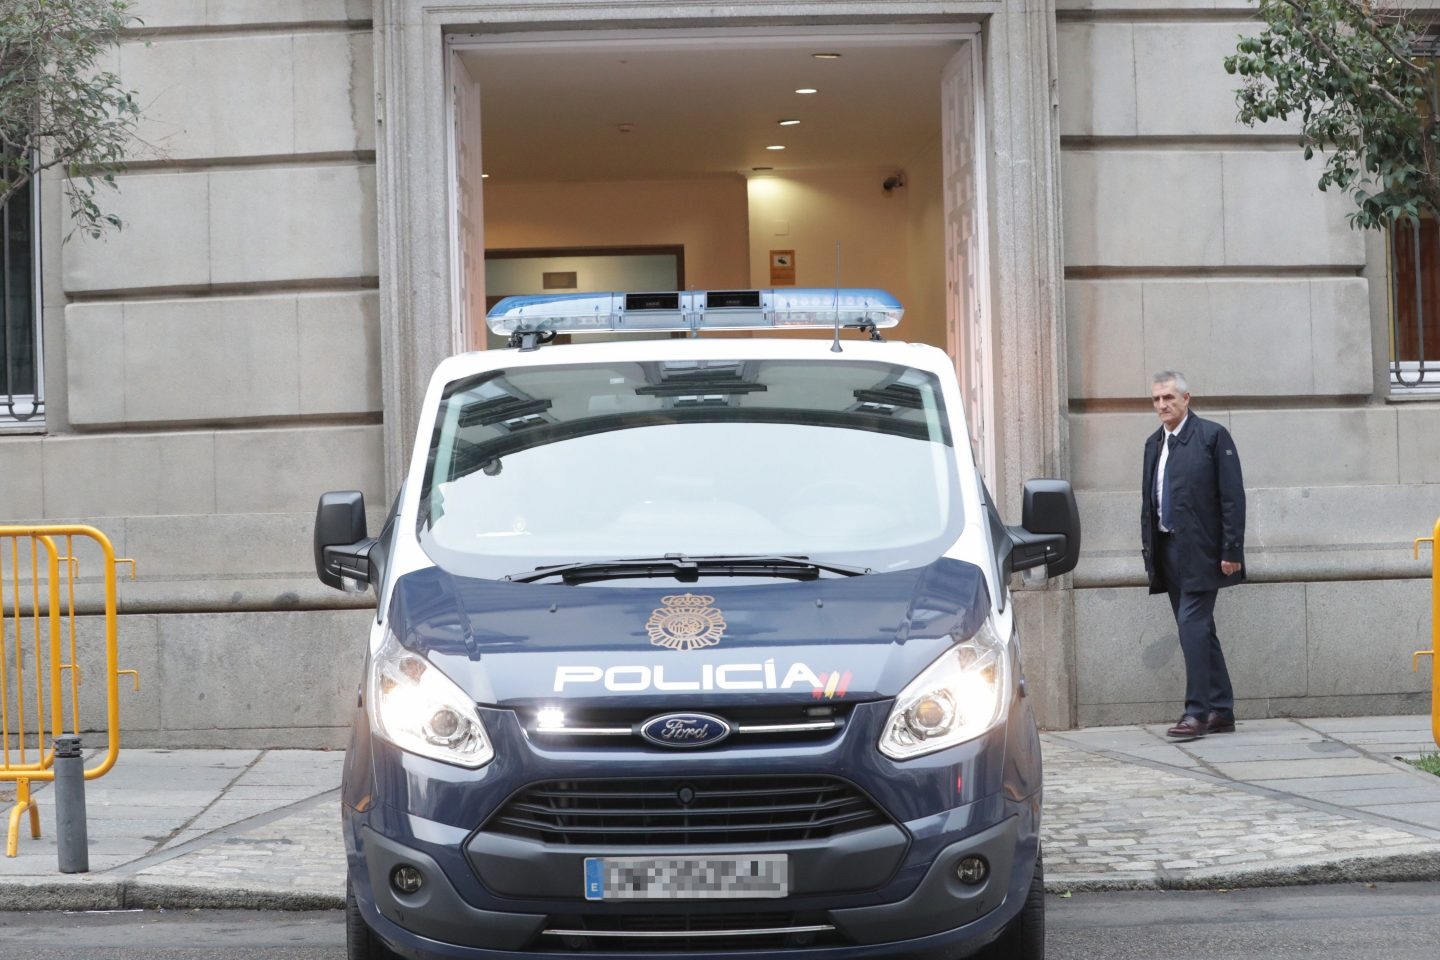 El furgón policial que ha trasladado al ex vicepresidente catalán Oriol Junqueras desde los calabozos de la Audiencia Nacional, entra en el Tribunal Supremo.